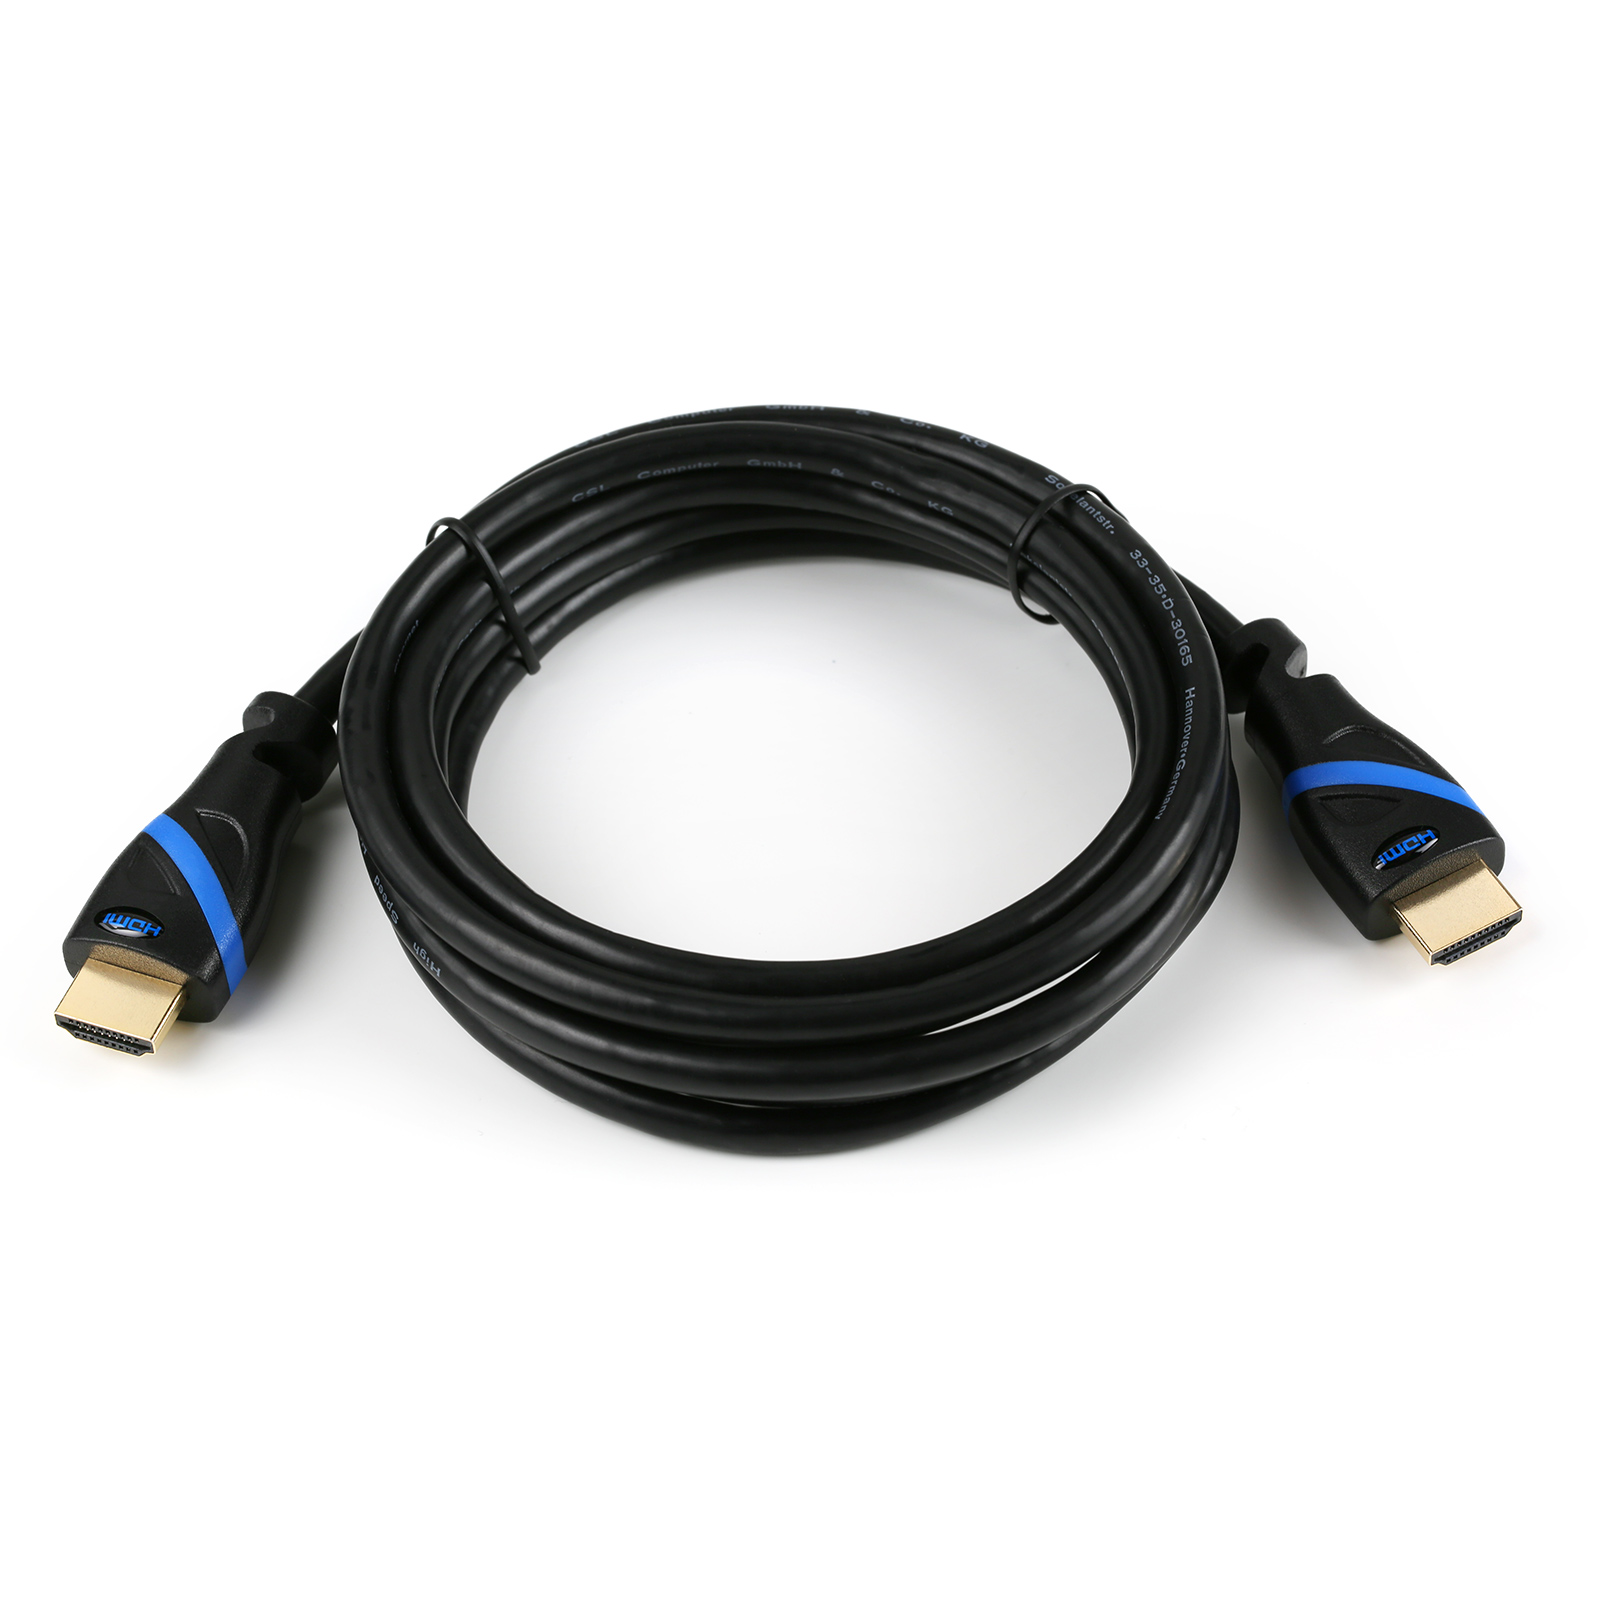 CSL HDMI 2.0 Kabel, 3m schwarz/blau Kabel, HDMI